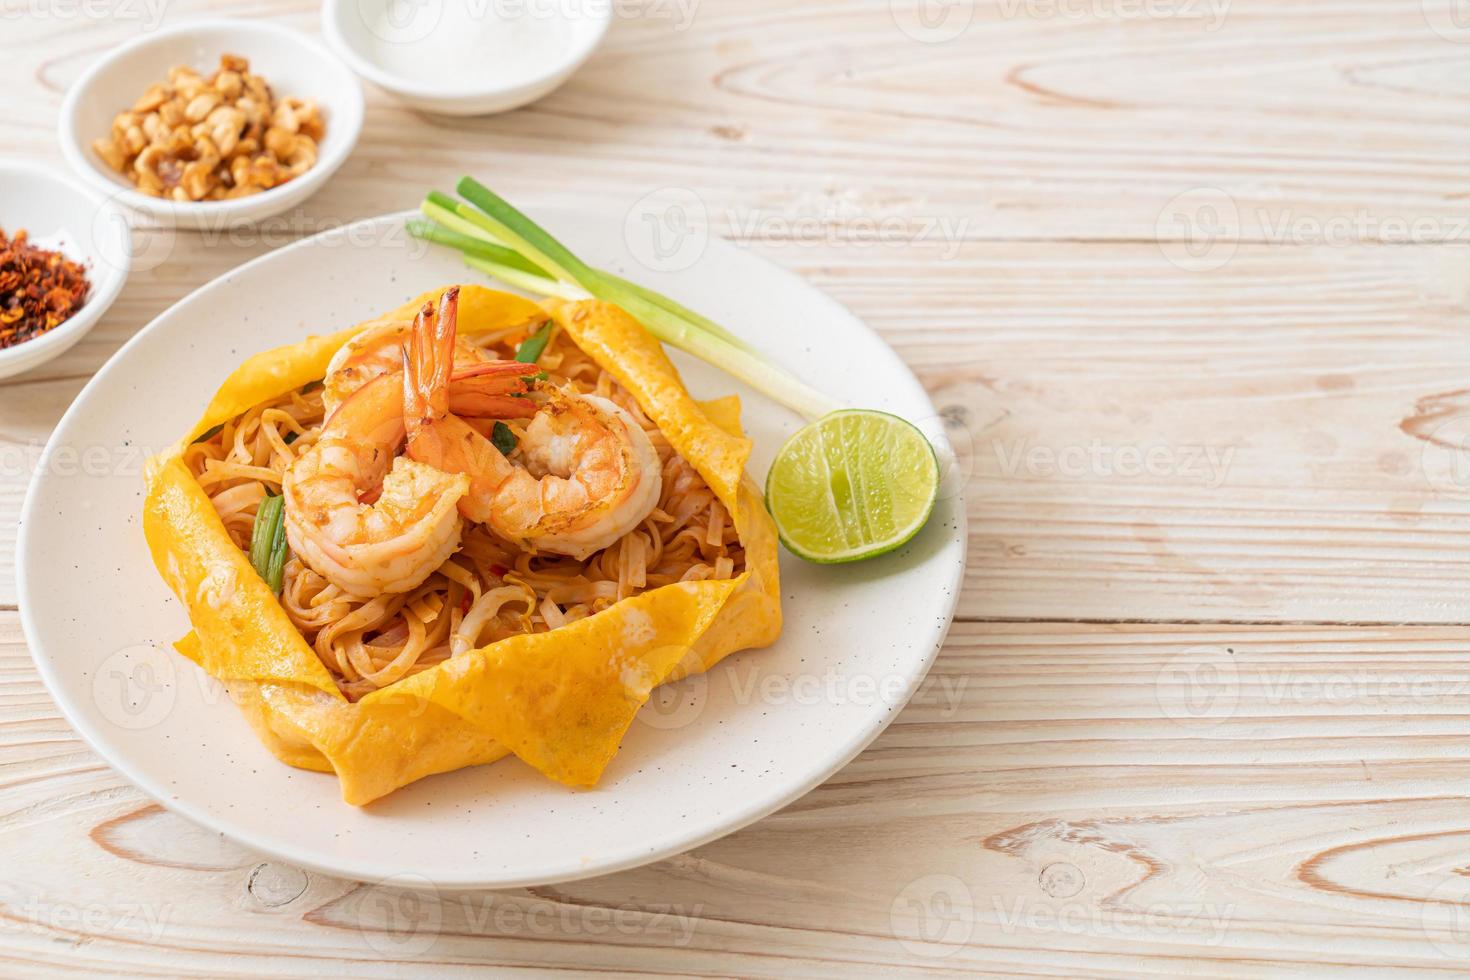 macarrão tailandês frito com camarão e embrulho de ovo ou pad thai foto